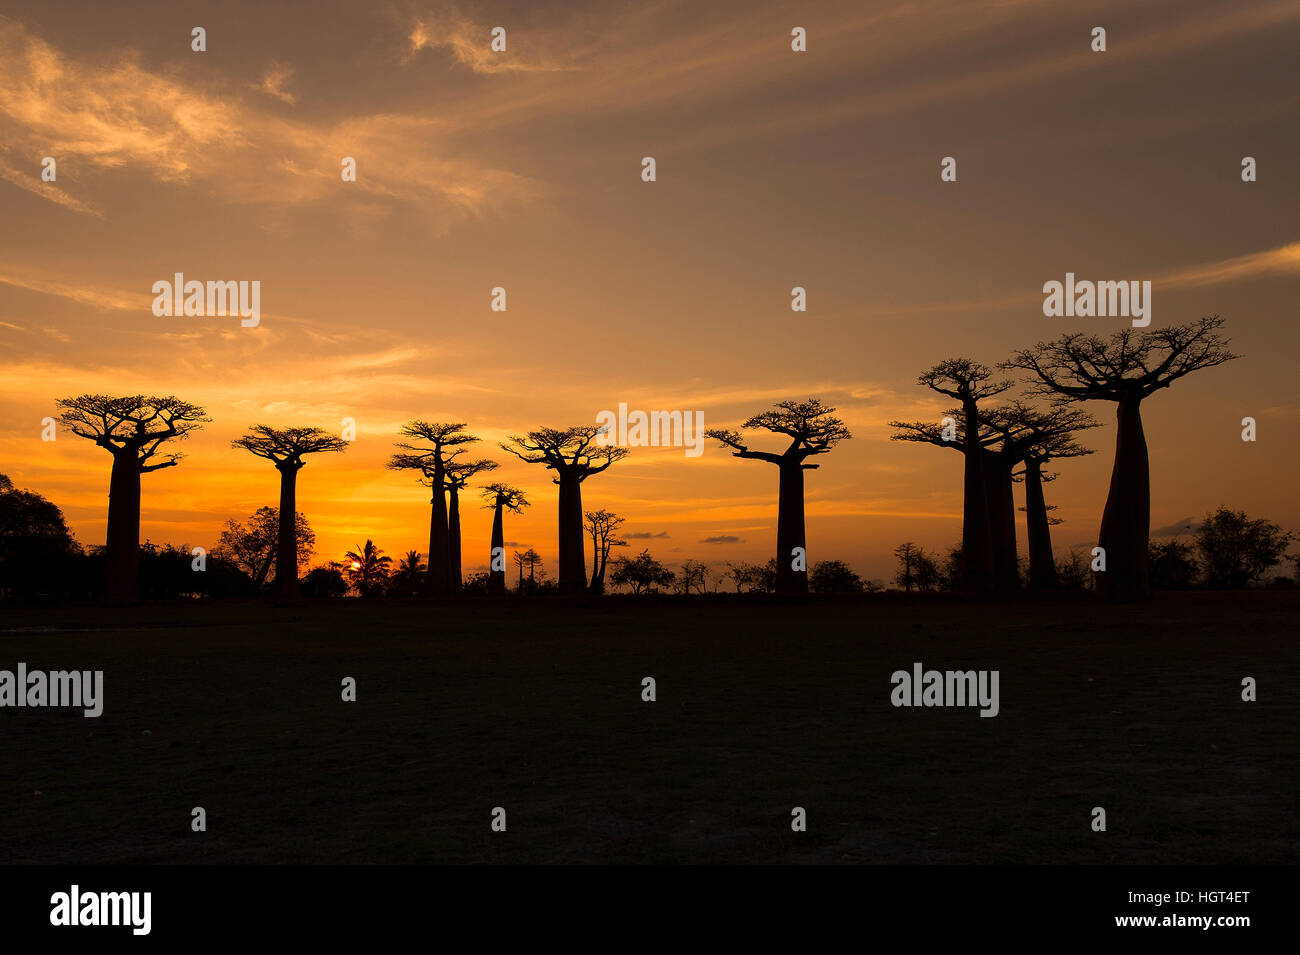 Fony Baobab (Adansonia rubrostipa) arbres, rétroéclairé, coucher de soleil, la réserve Reniala, Madagascar Banque D'Images